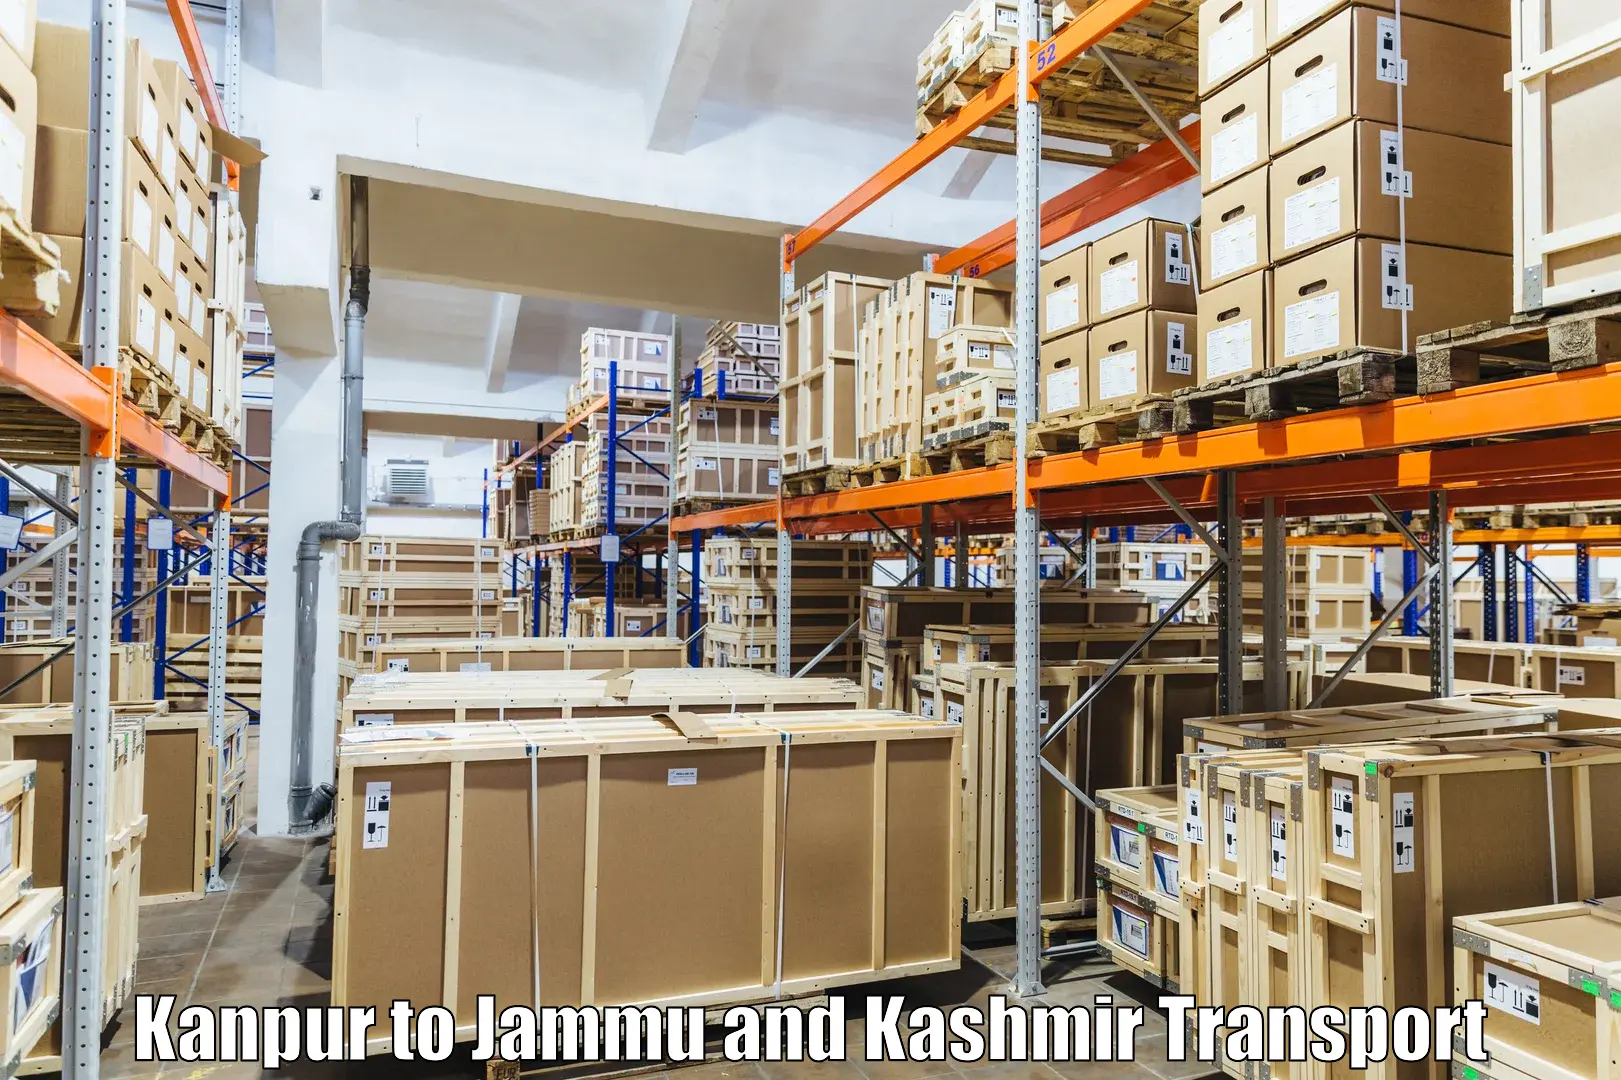 Land transport services Kanpur to Kishtwar